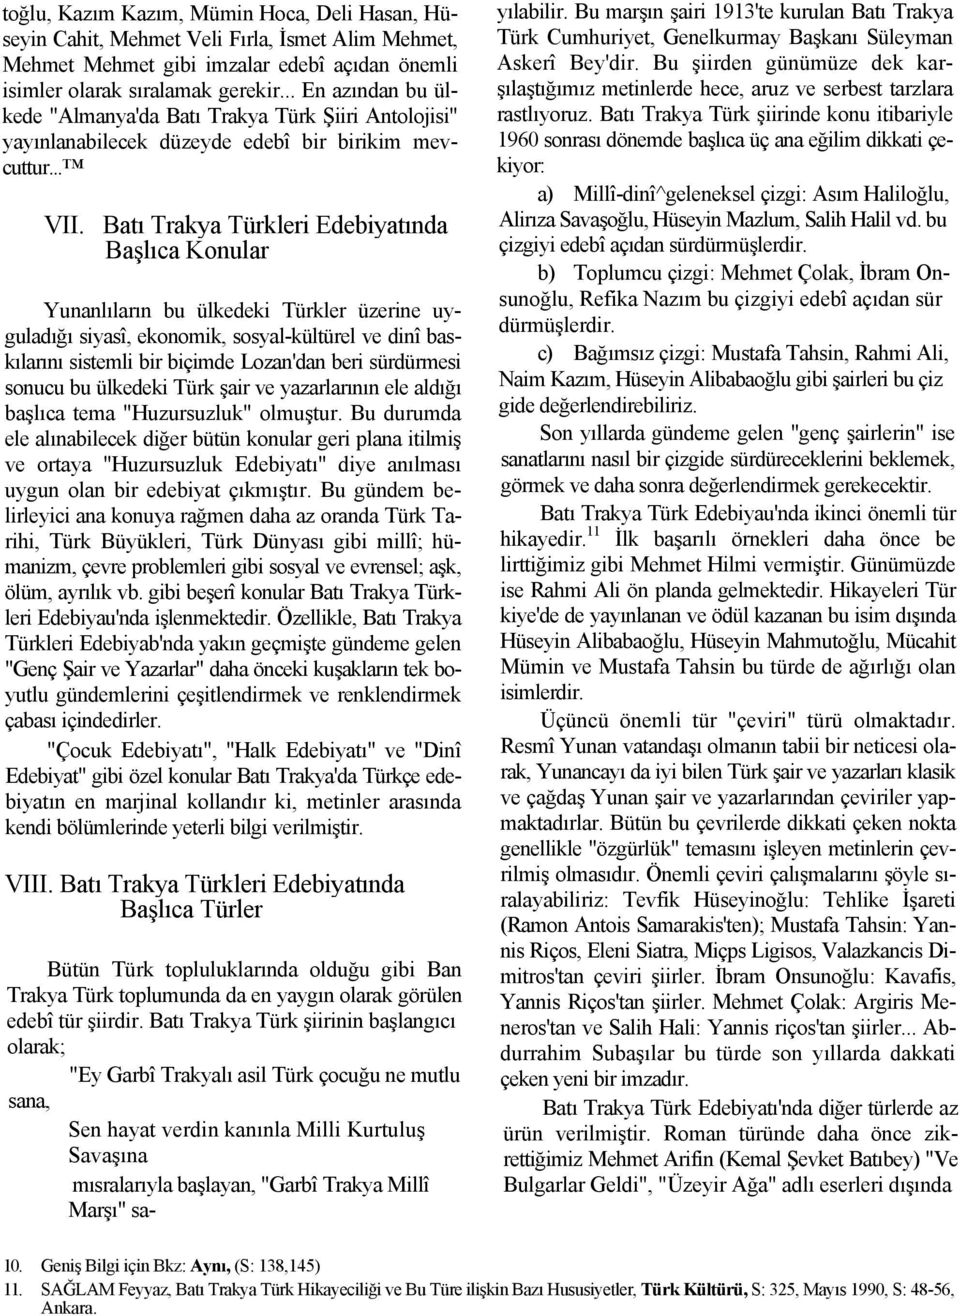 Batı Trakya Türkleri Edebiyatında Başlıca Konular Yunanlıların bu ülkedeki Türkler üzerine uyguladığı siyasî, ekonomik, sosyal-kültürel ve dinî baskılarını sistemli bir biçimde Lozan'dan beri